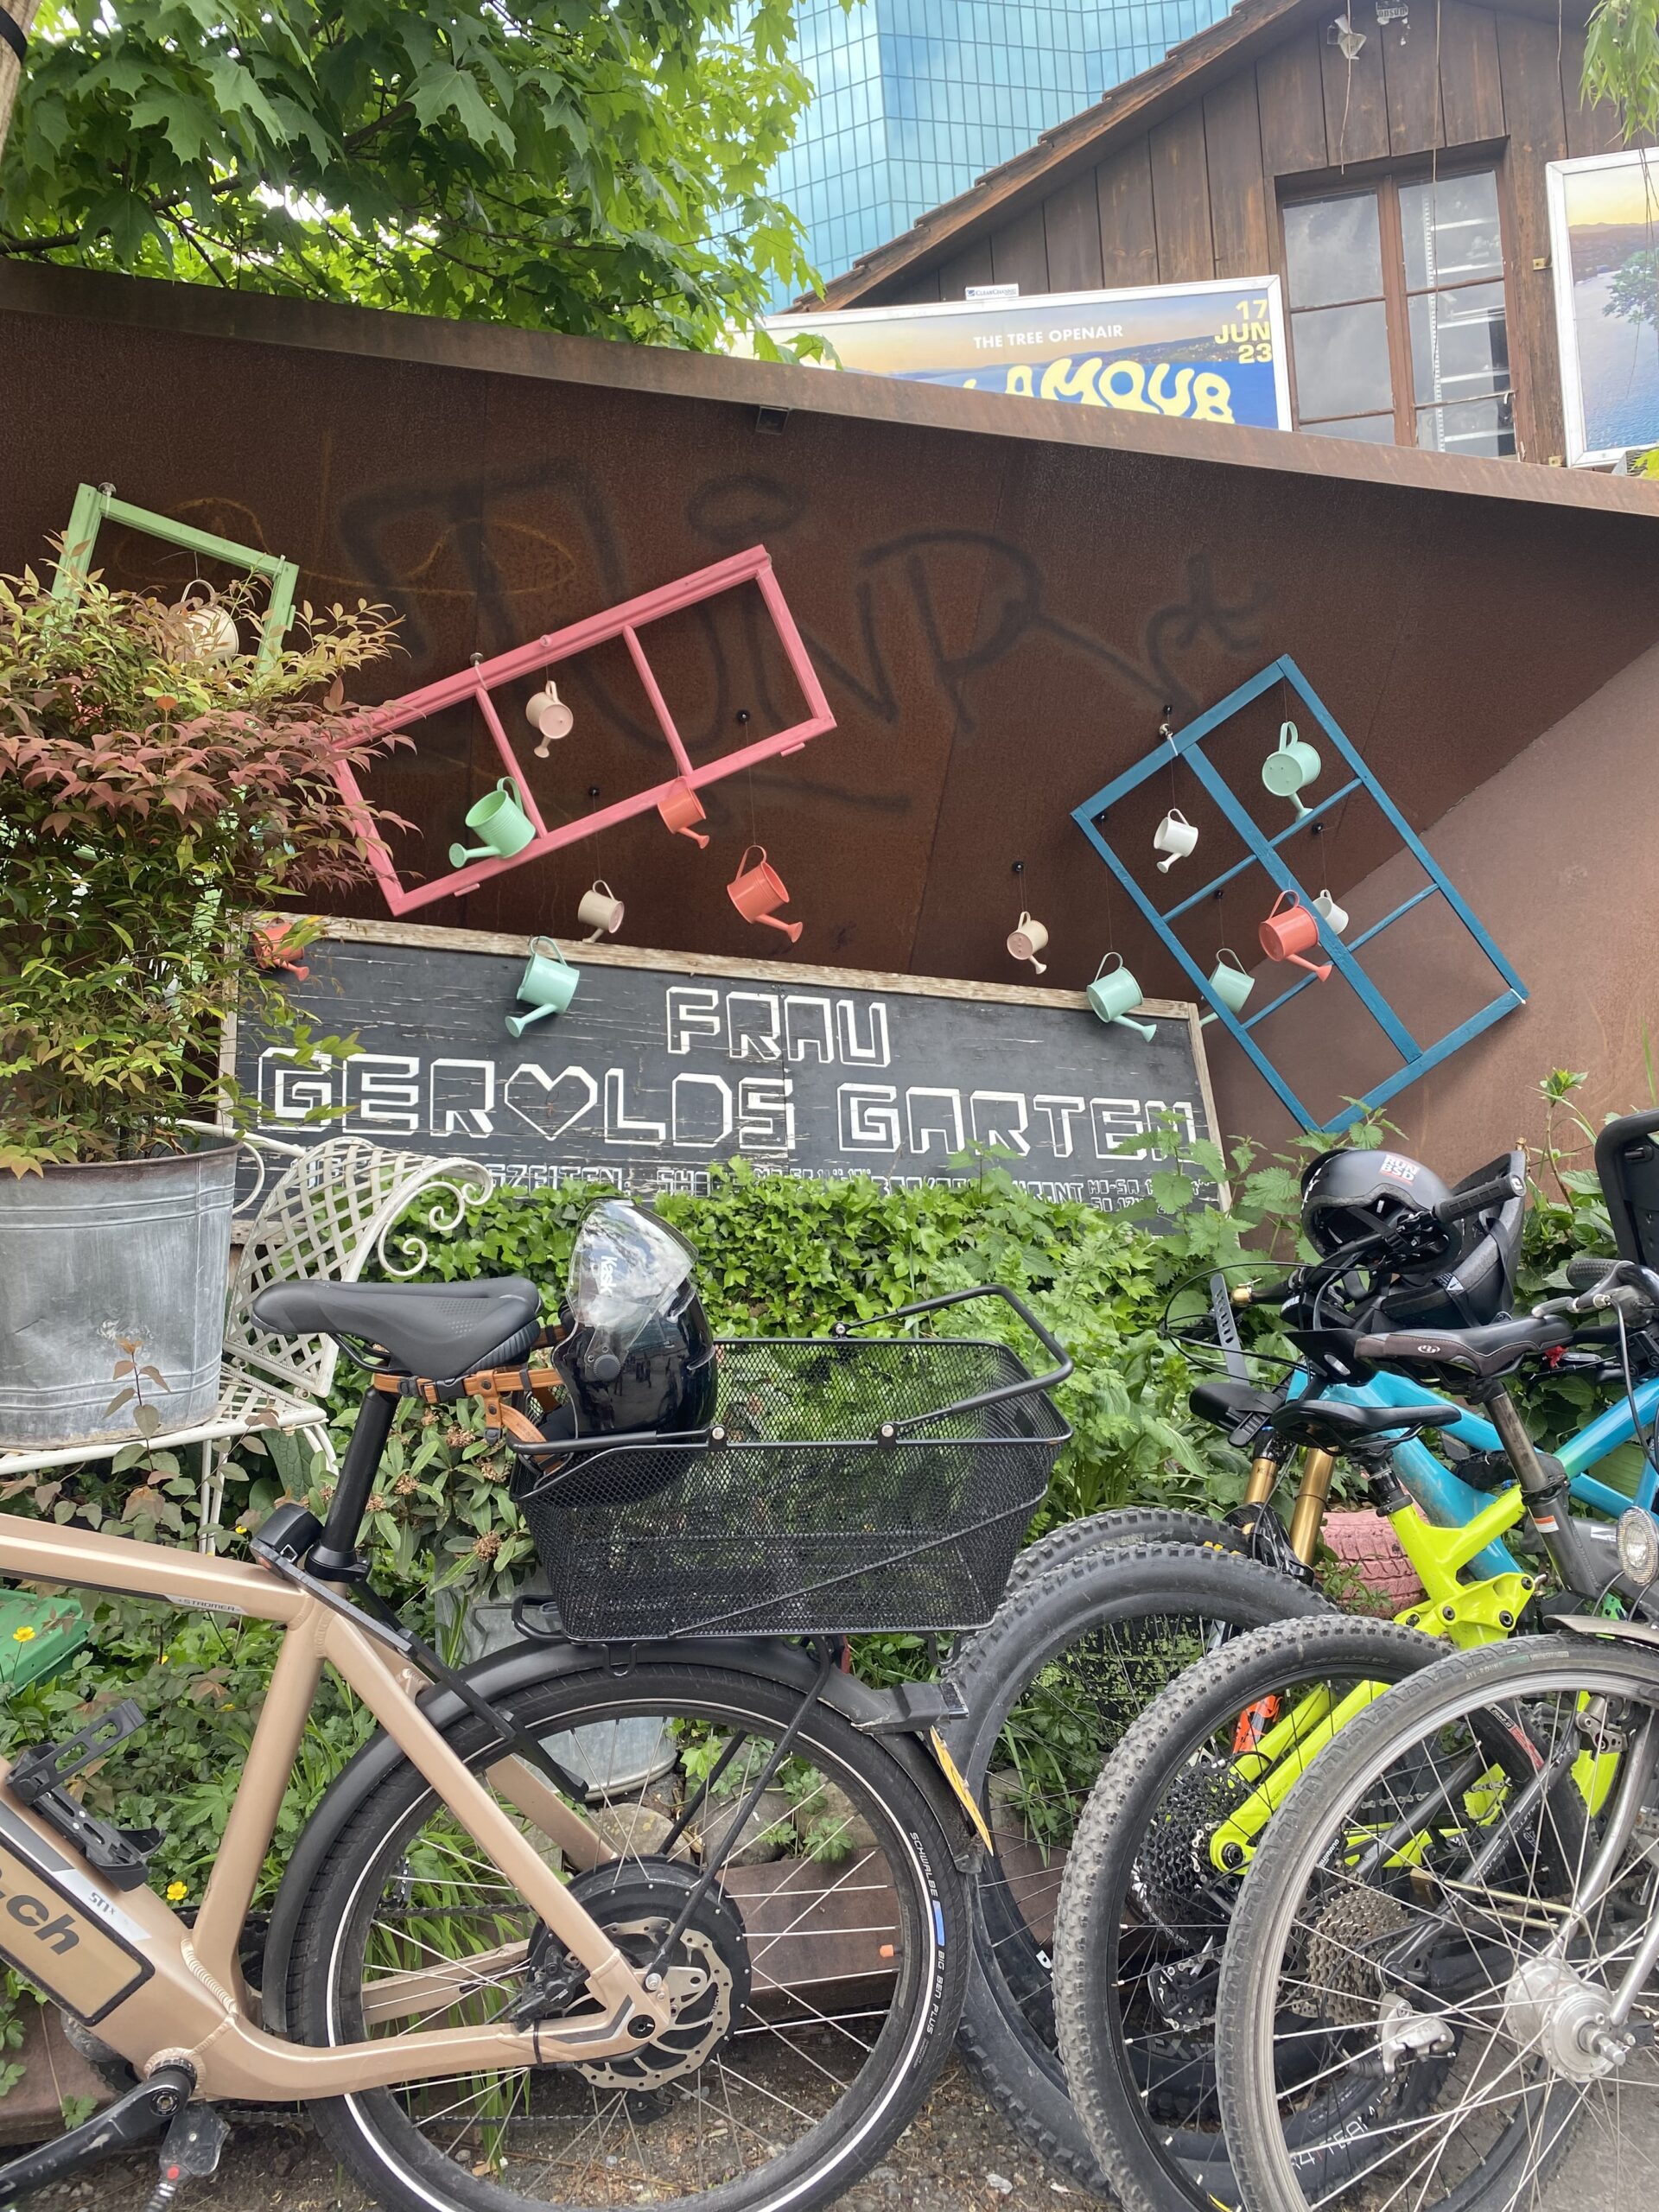 Fahrräder, alte Fensterrahmen und ein großes Schild Frau Gerolds Garten